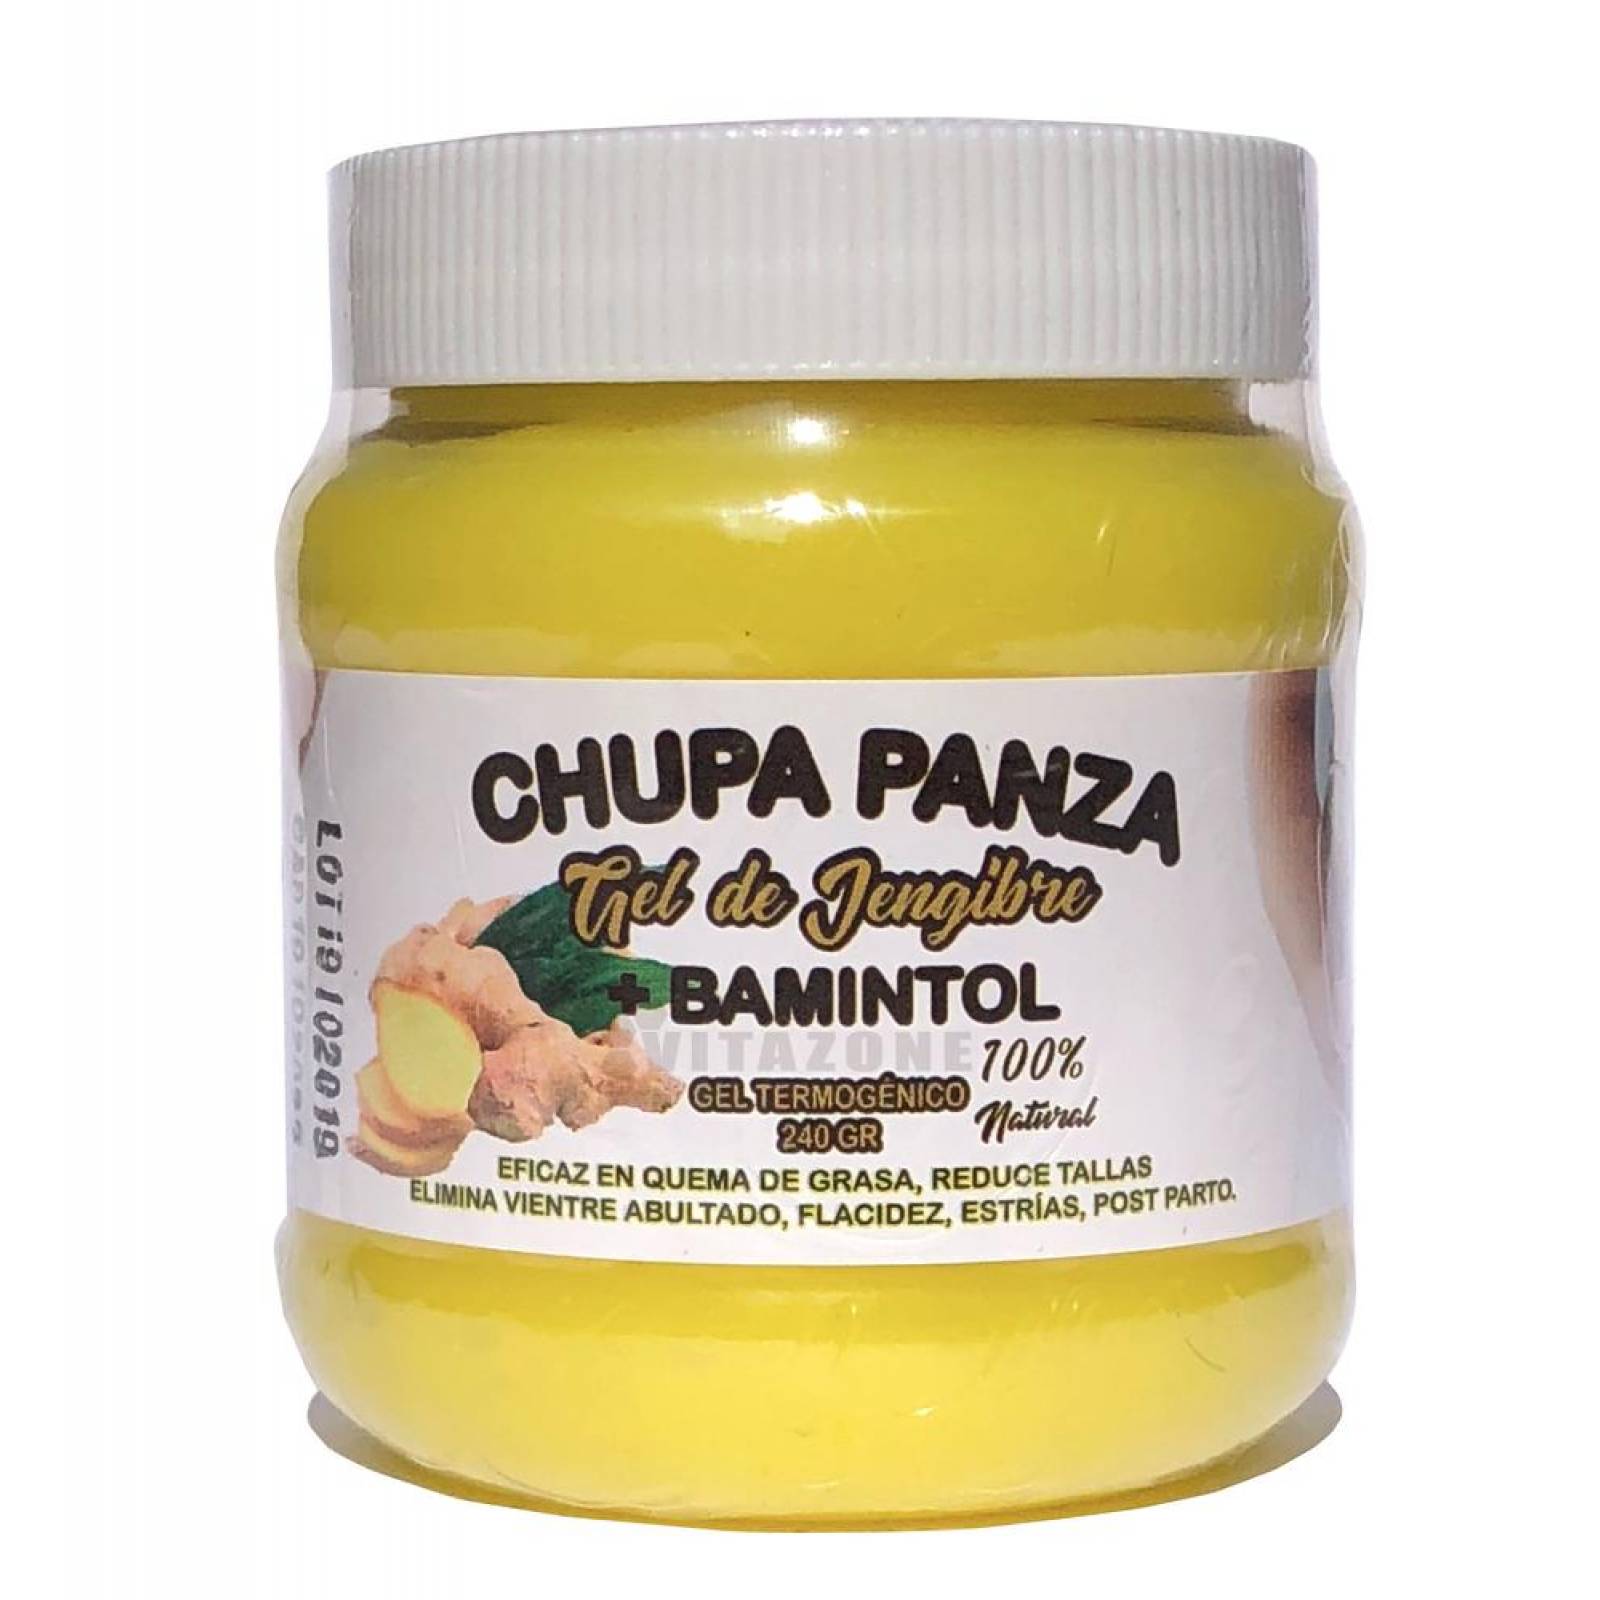 Gel Chupa Panza 24 pzs Original de Jengibre y Bamintol 240 gr 